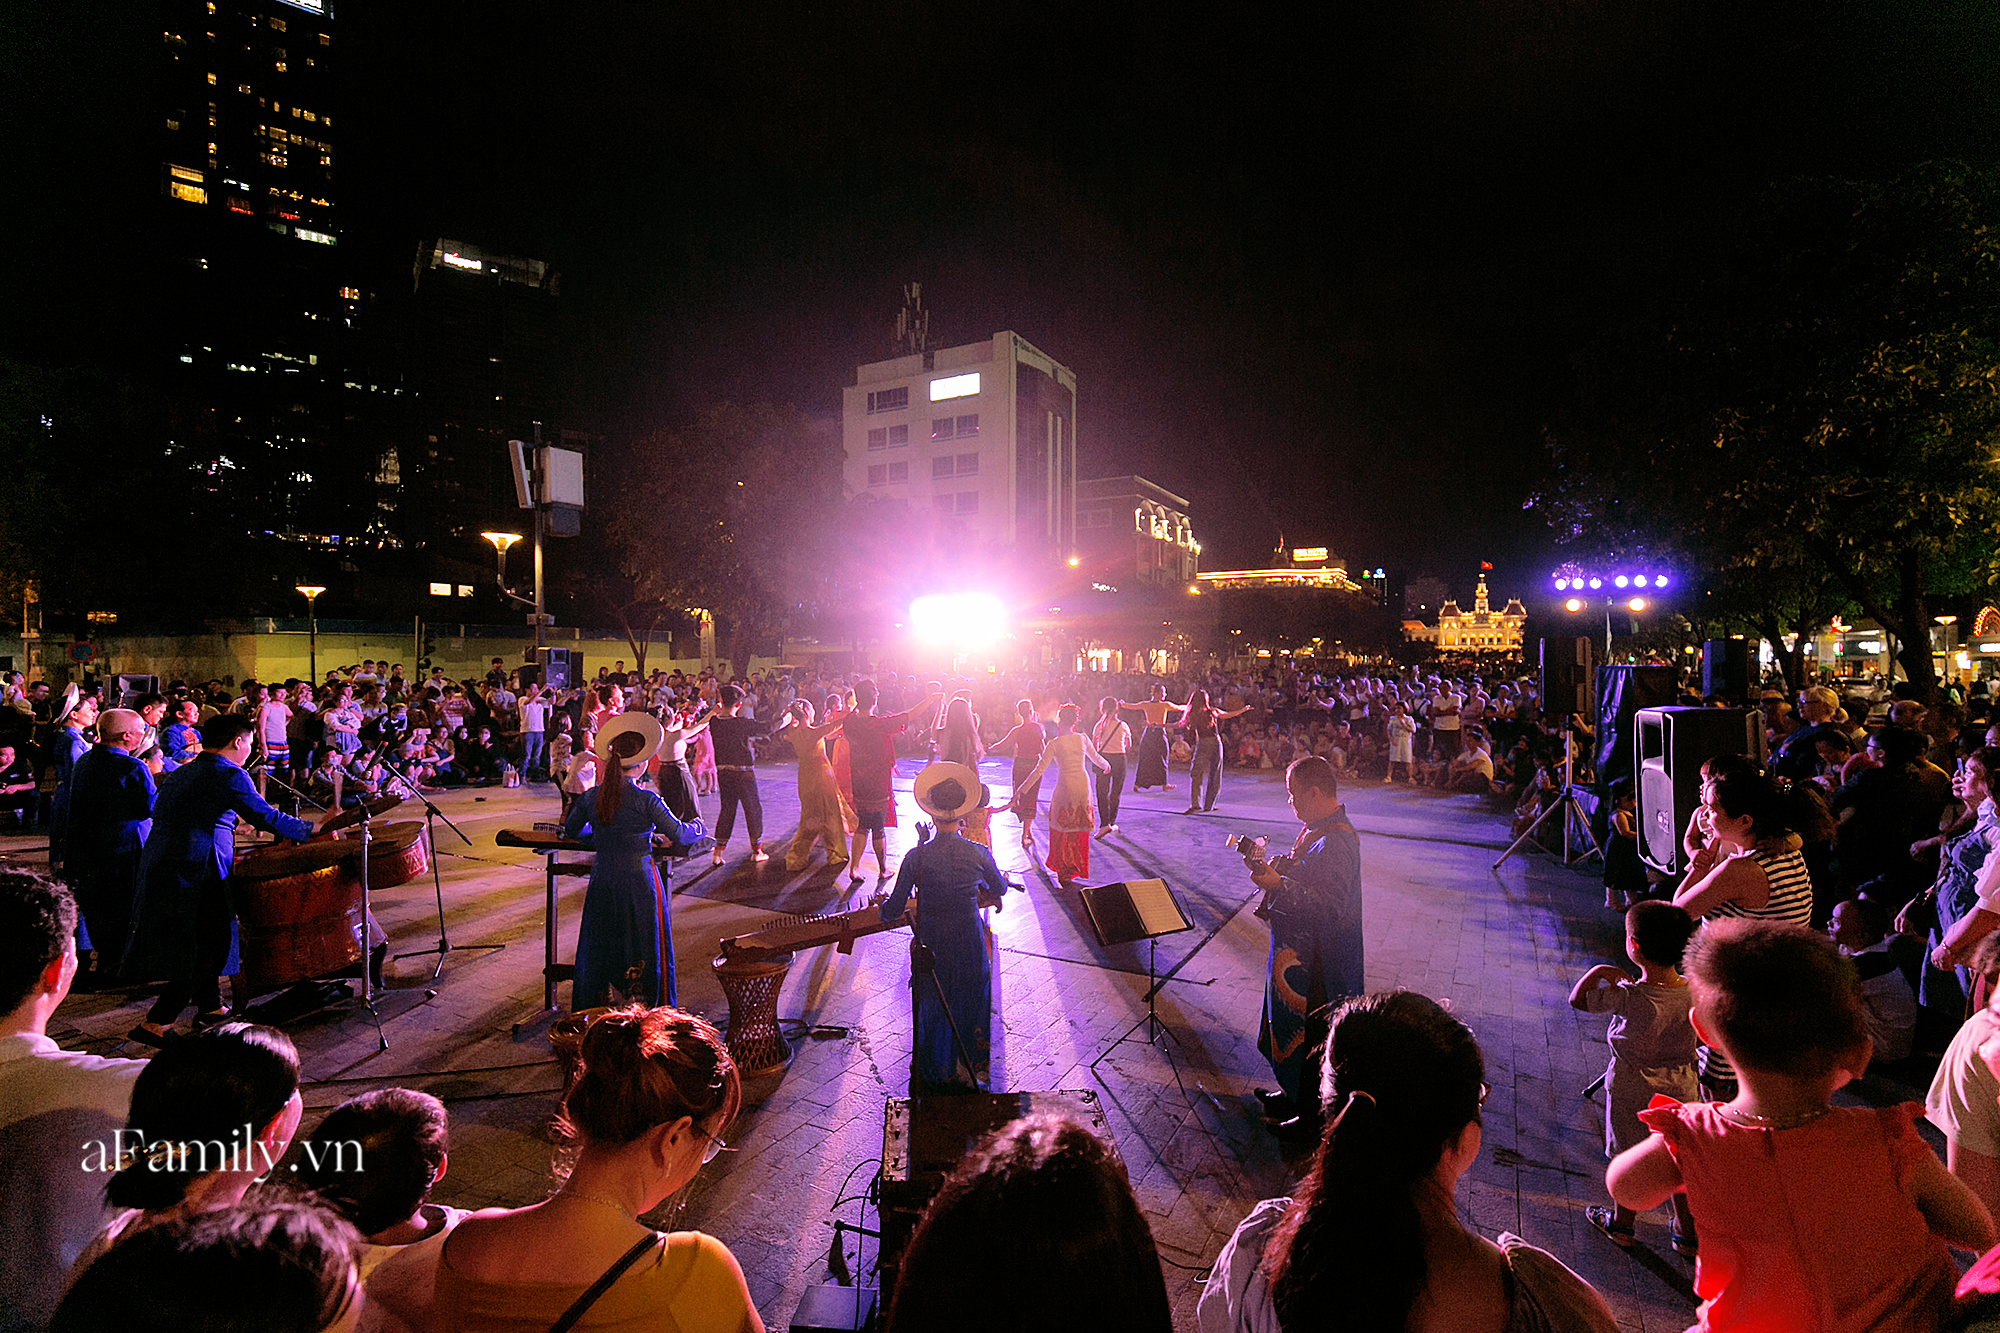 Phố đi bộ Nguyễn Huệ bắt đầu tổ chức các hoạt động biểu diễn nghệ thuật đường phố miễn phí và đây là tuần đầu tiên người Sài Gòn được trải nghiệm - Ảnh 1.